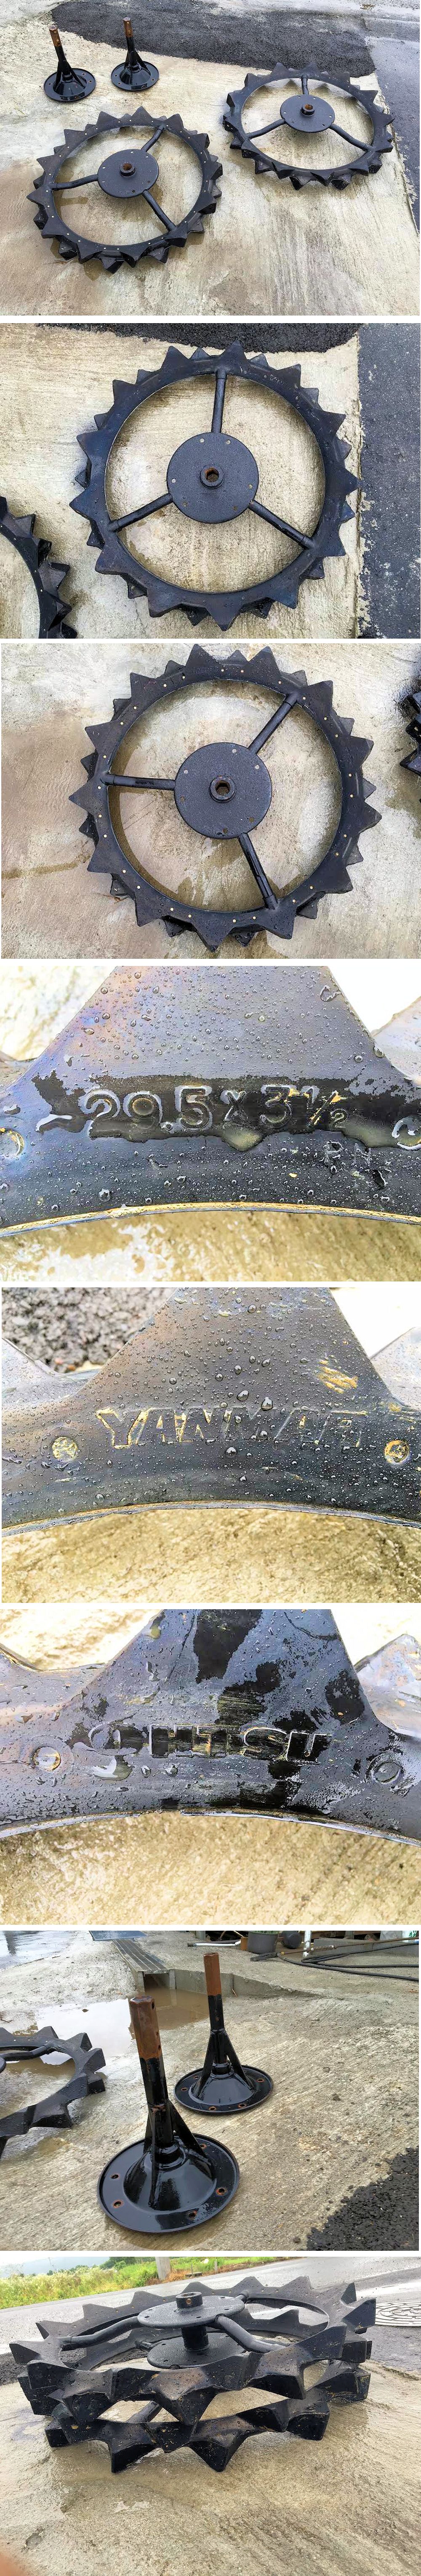 ヤンマー 補助車輪 オーツタイヤ サイズ 29.5×3 1/2 取付金具付 美品 中古